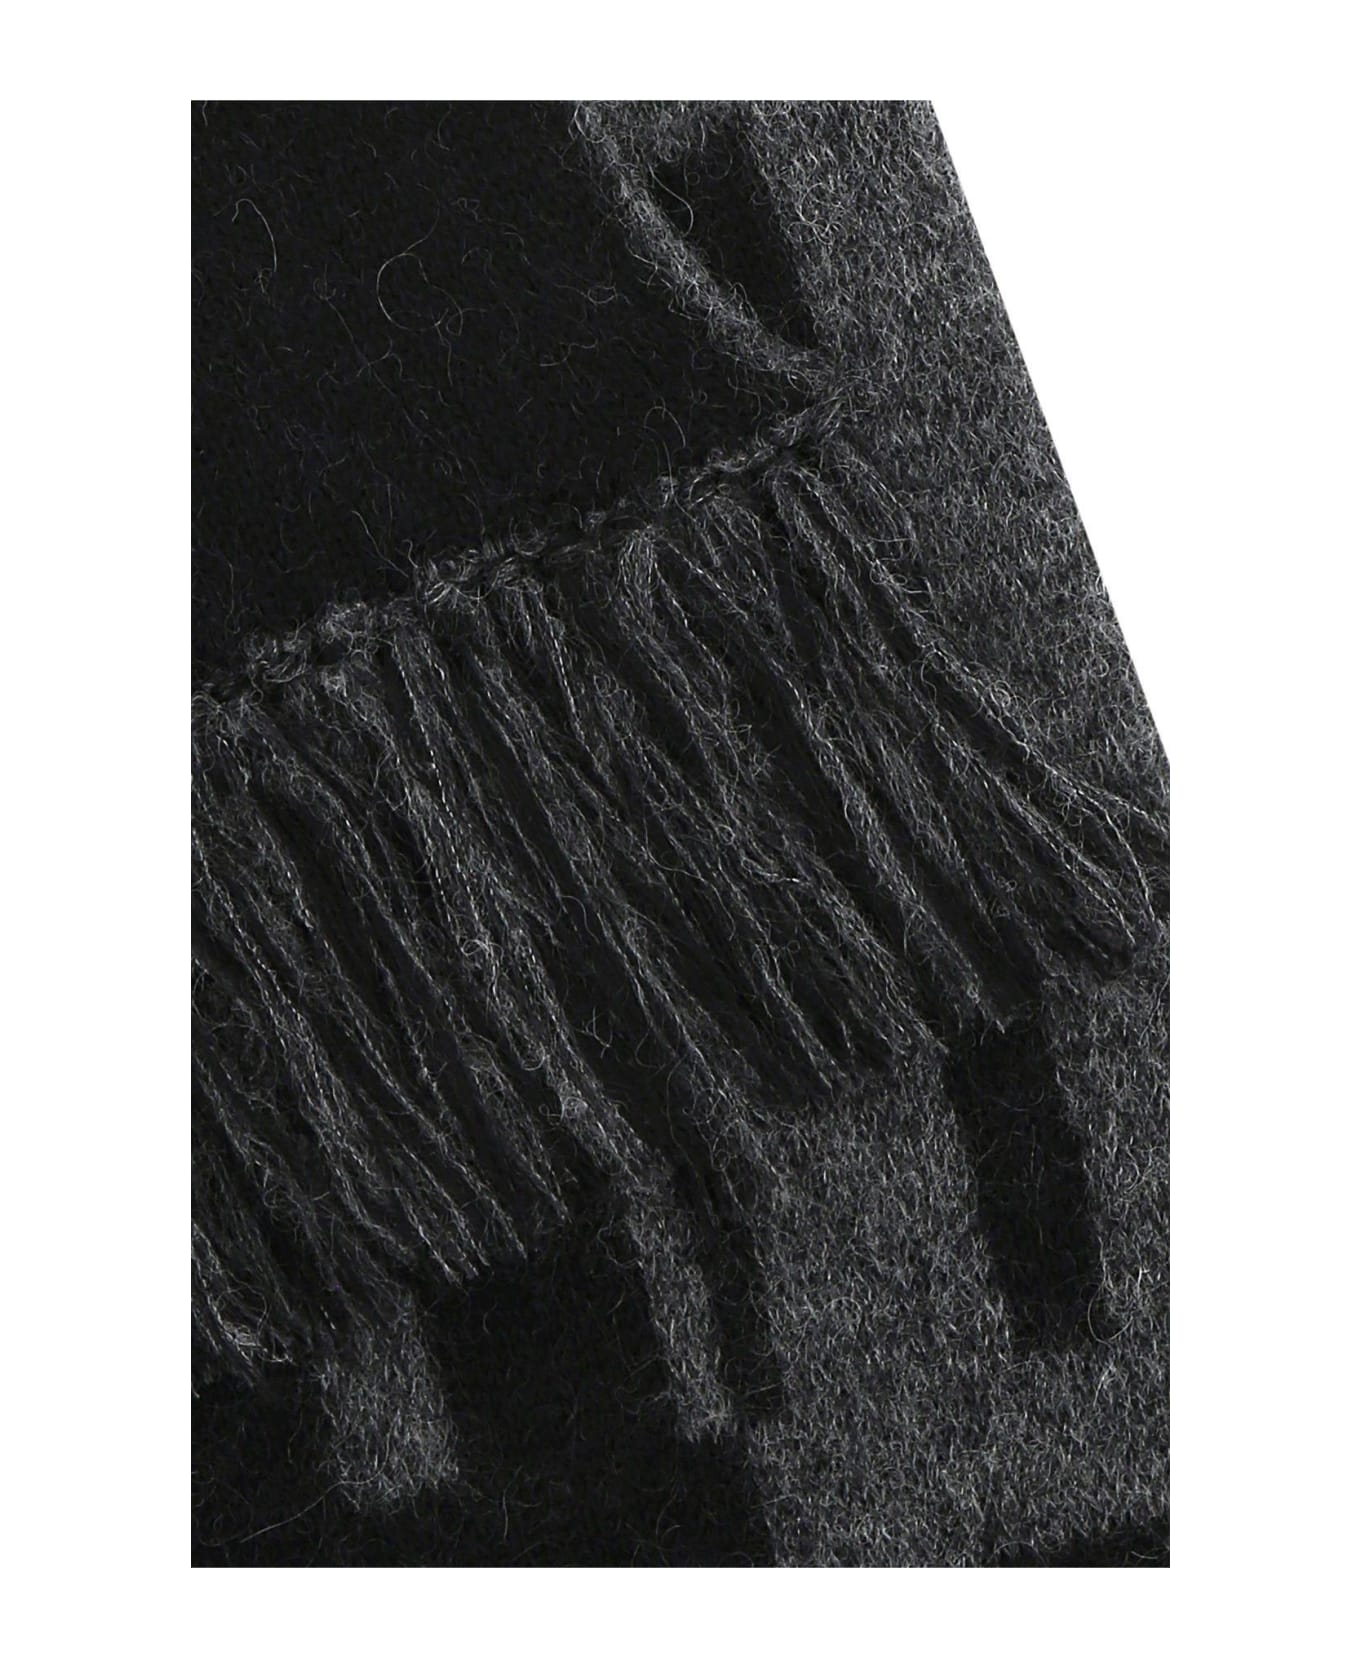 Saint Laurent Printed Wool Blend Scarf - Black/dark grey